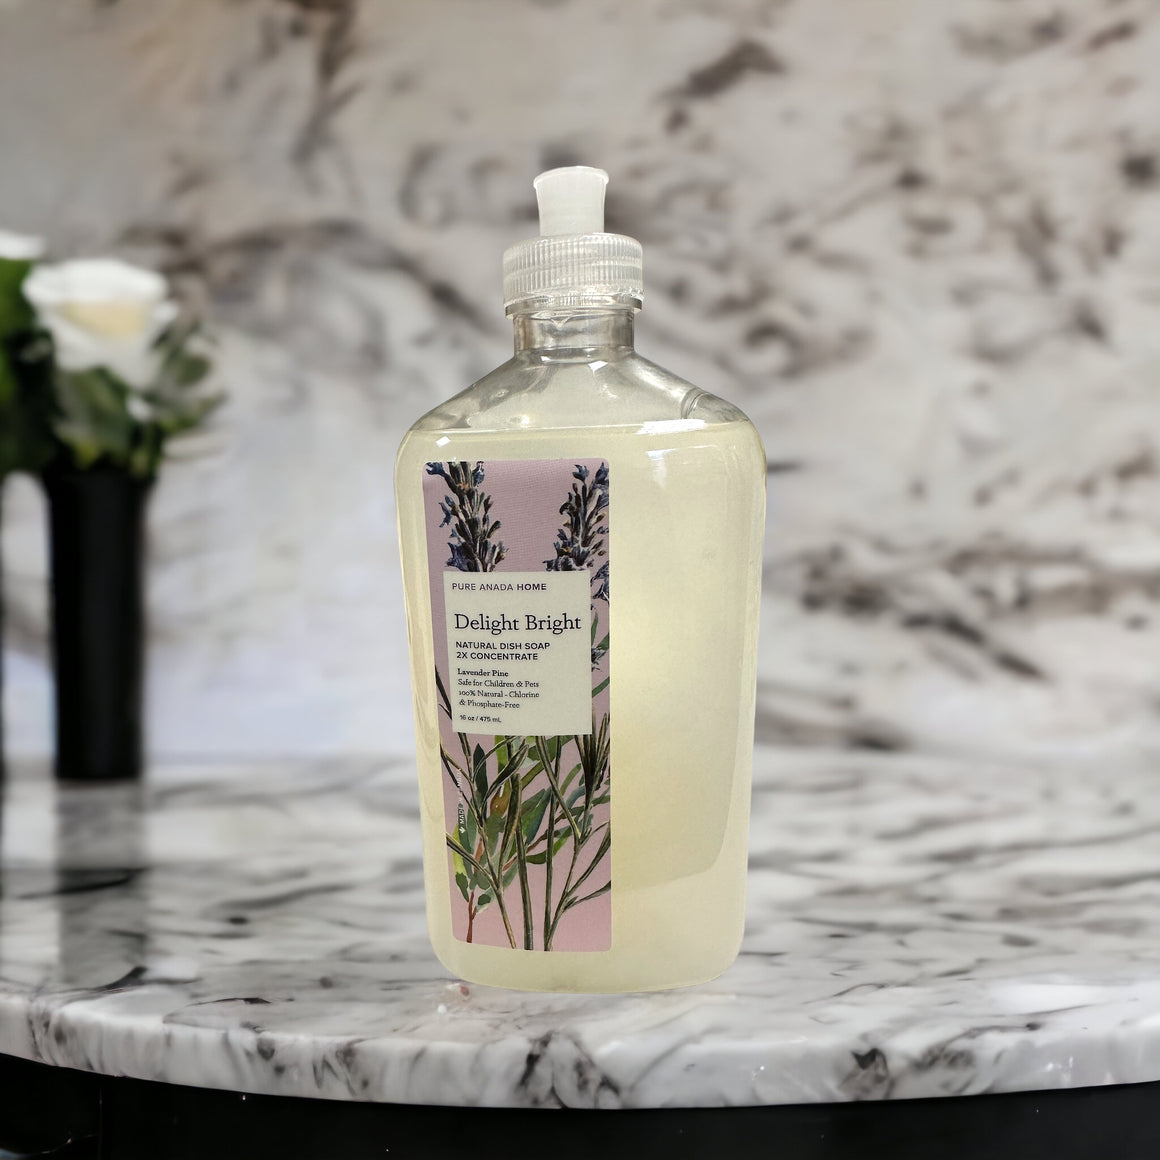 Delight Bright - Natural Dish Soap (2 x Concentrate) Lavender Pine 16oz/ 475ml